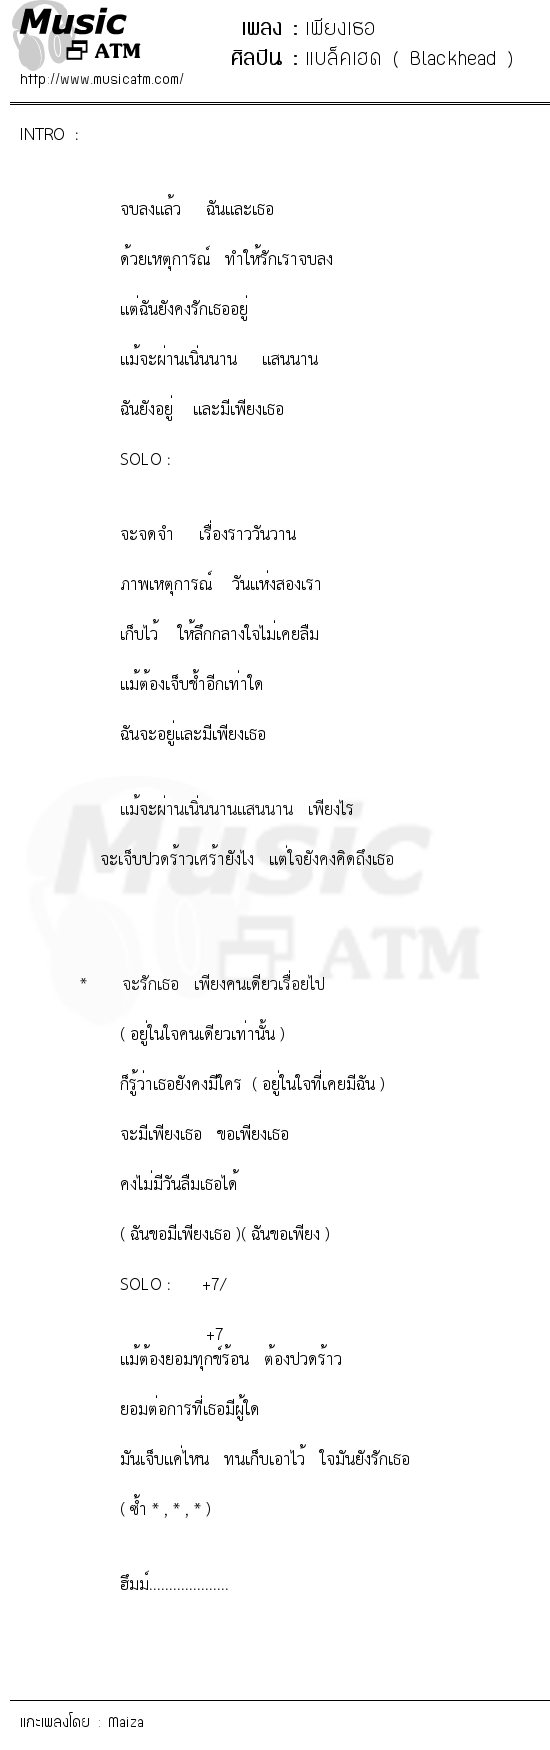 เนื้อเพลง เพียงเธอ - แบล็คเฮด ( Blackhead ) | เพลงไทย